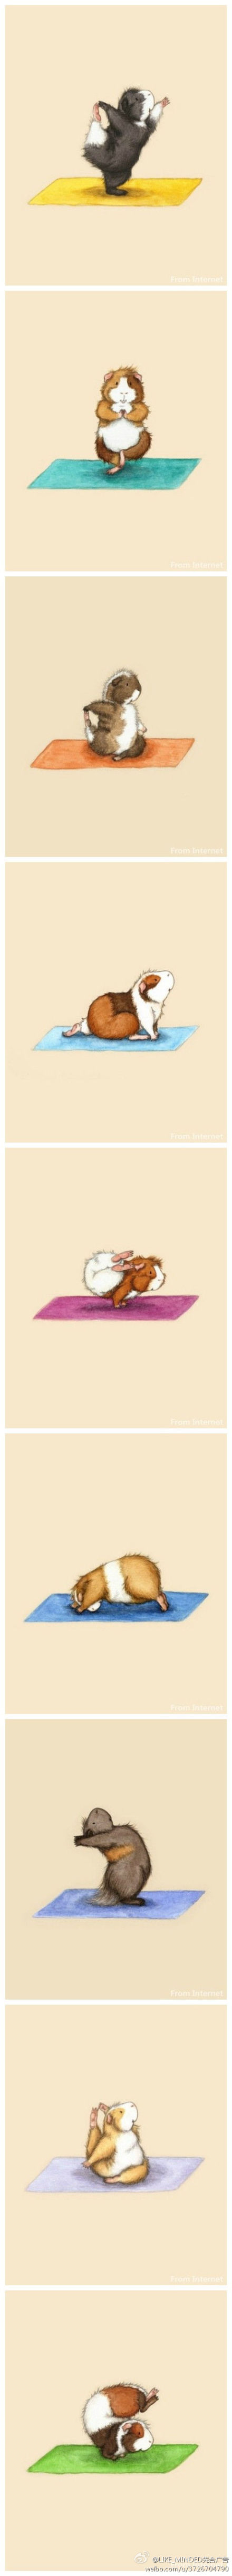 插画师Lesley DeSantis作品 在练瑜伽的仓鼠